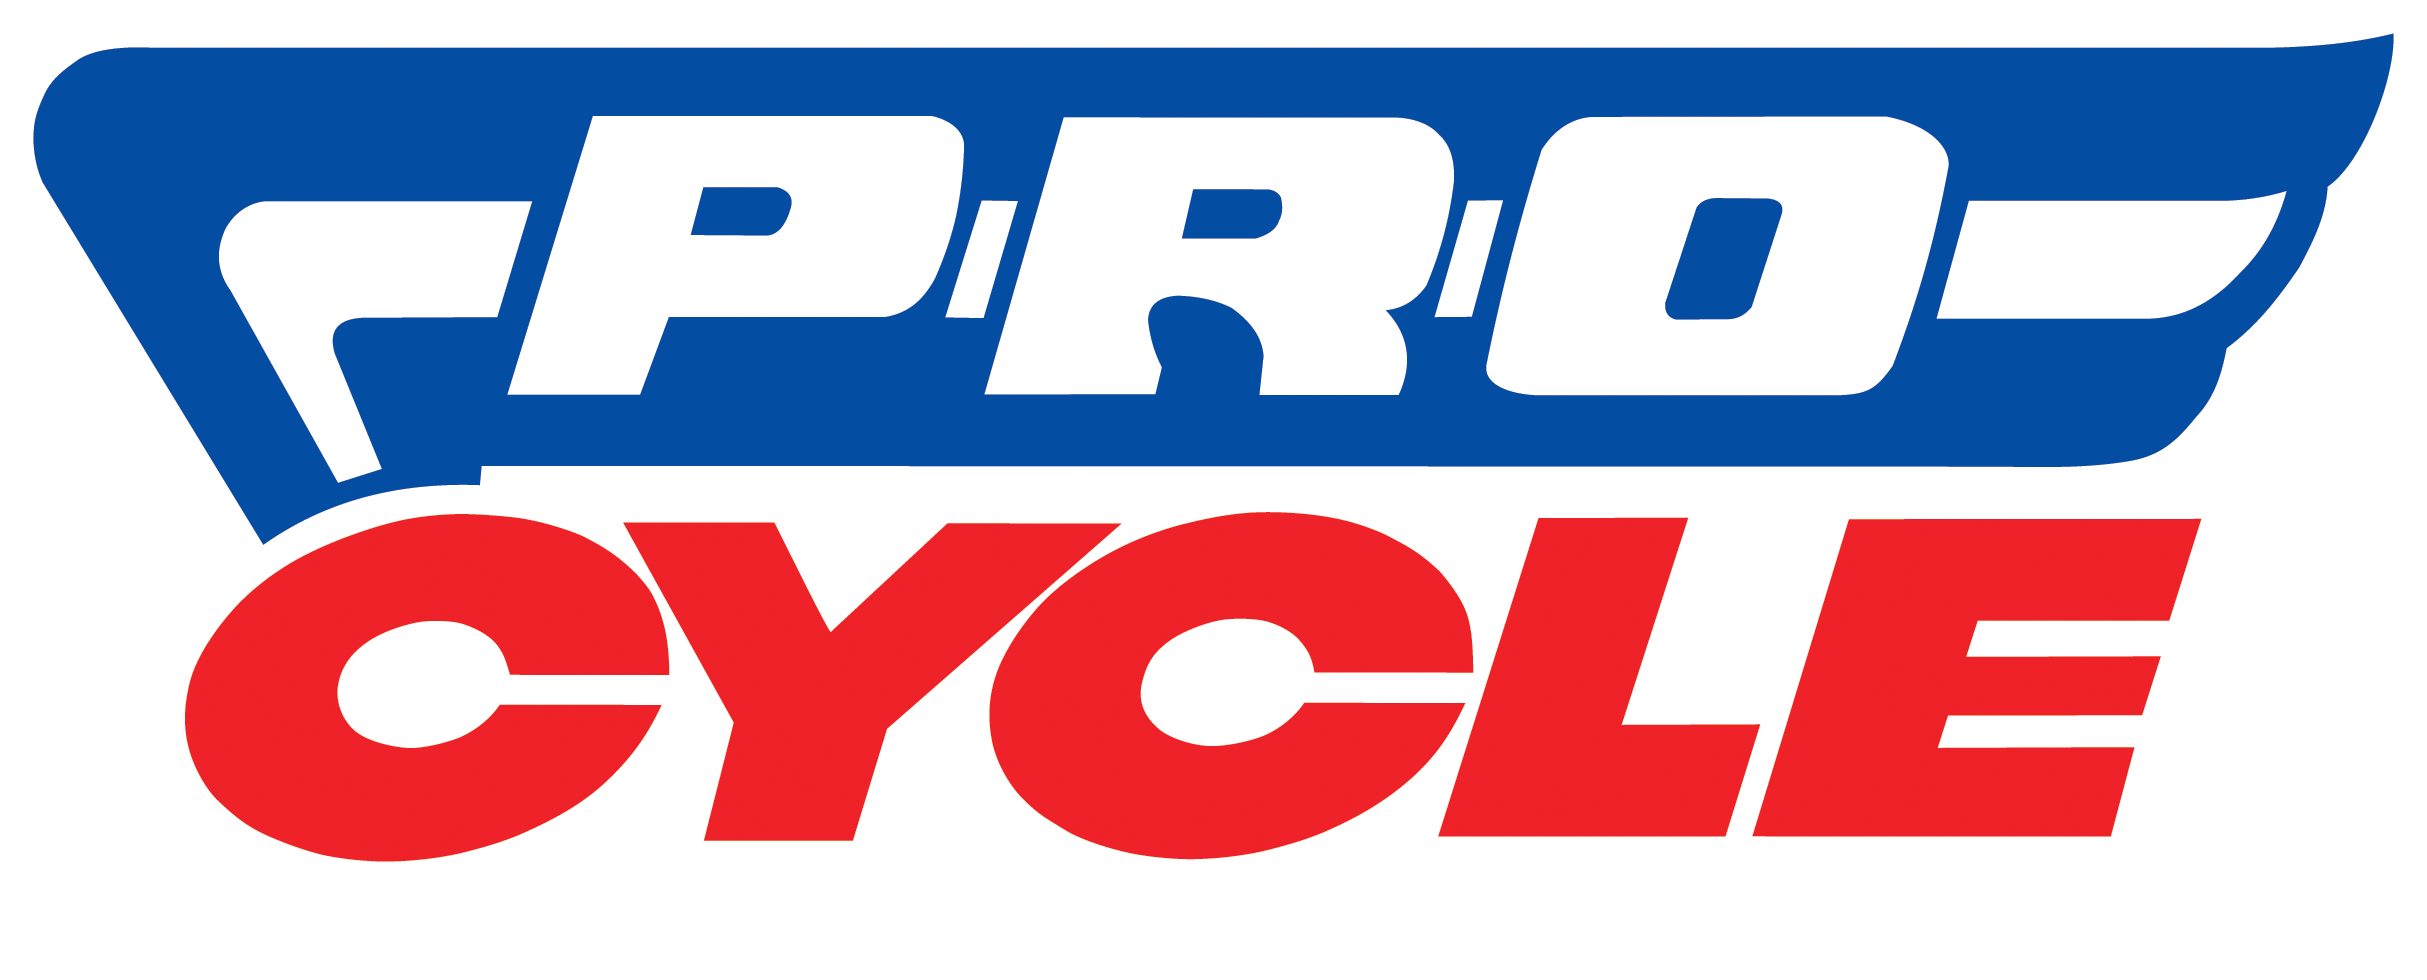 procycle